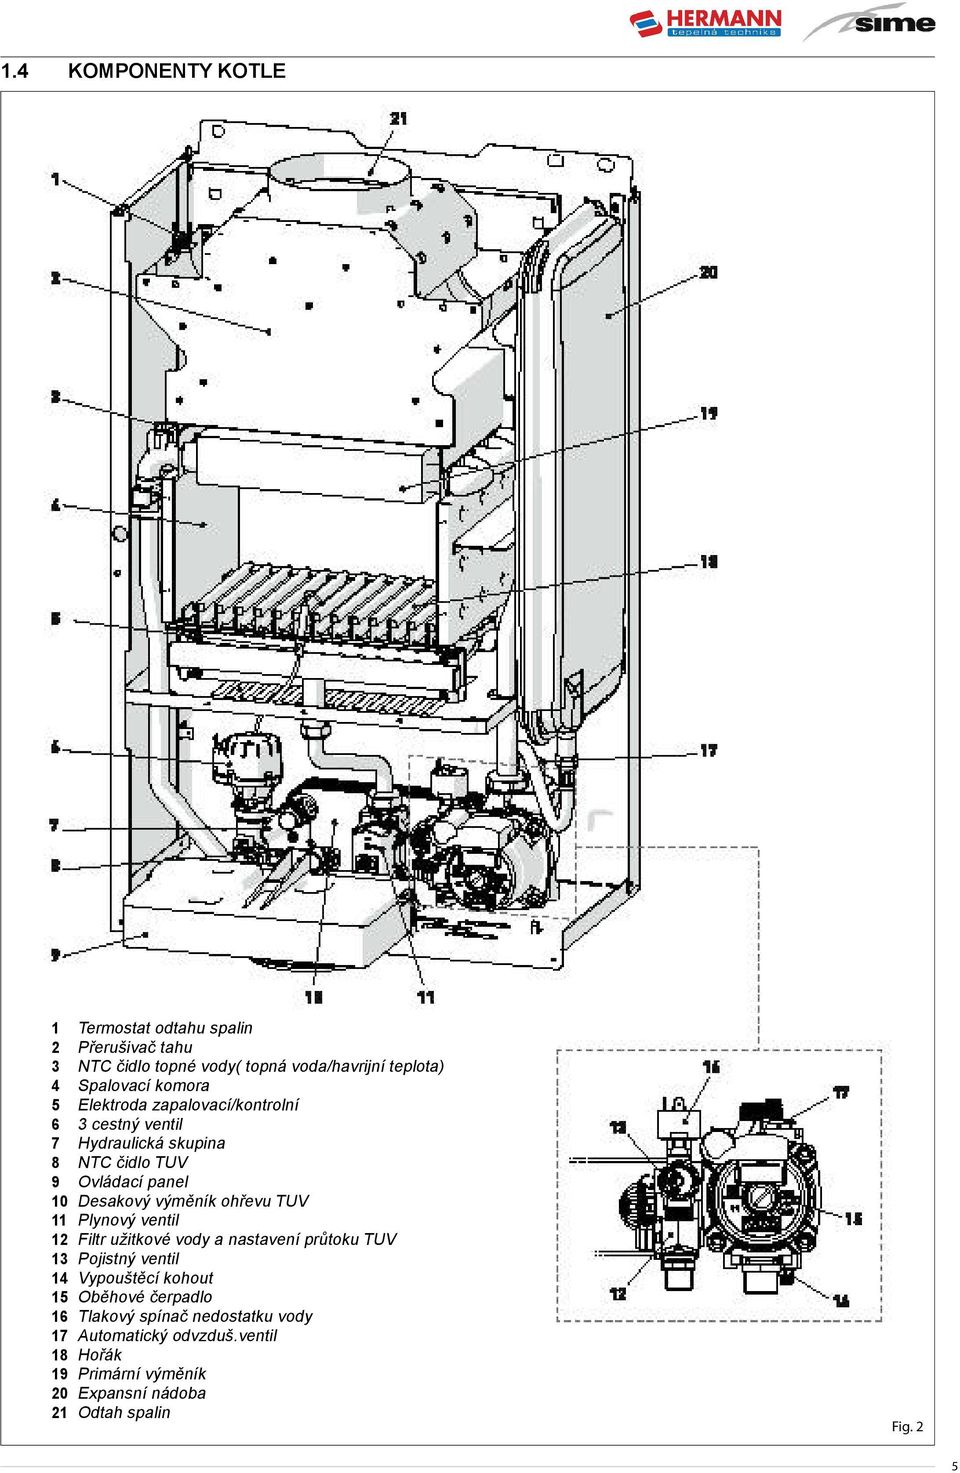 ohřevu TUV 11 Plynový ventil 12 Filtr užitkové vody a nastavení průtoku TUV 13 Pojistný ventil 14 Vypouštěcí kohout 15 Oběhové